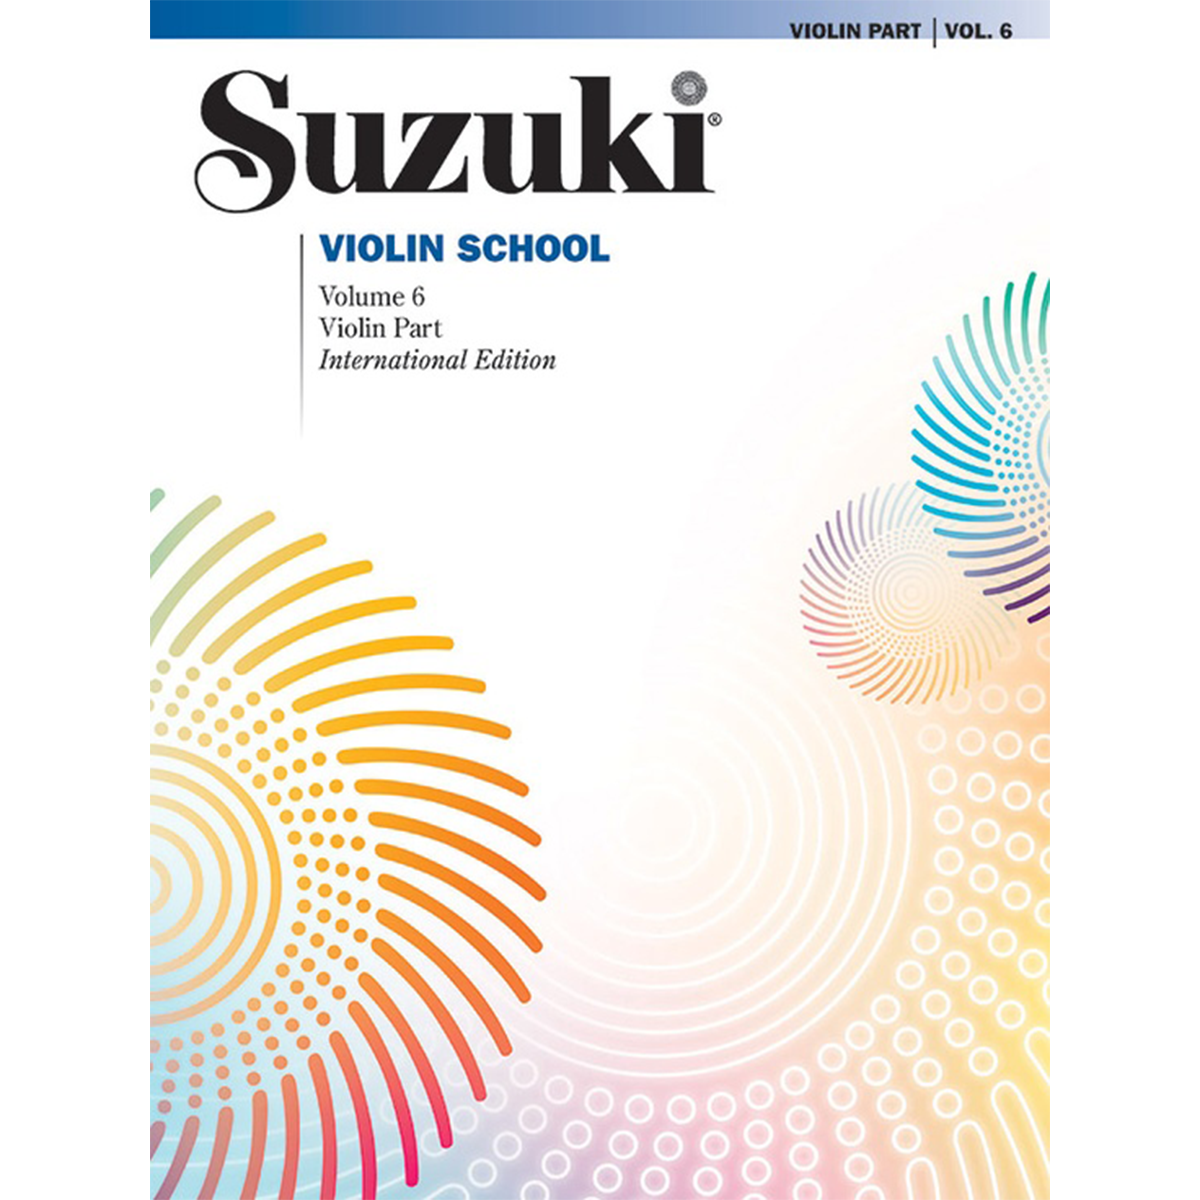 Suzuki Violin School: Violin Part, Vol. 6 in action